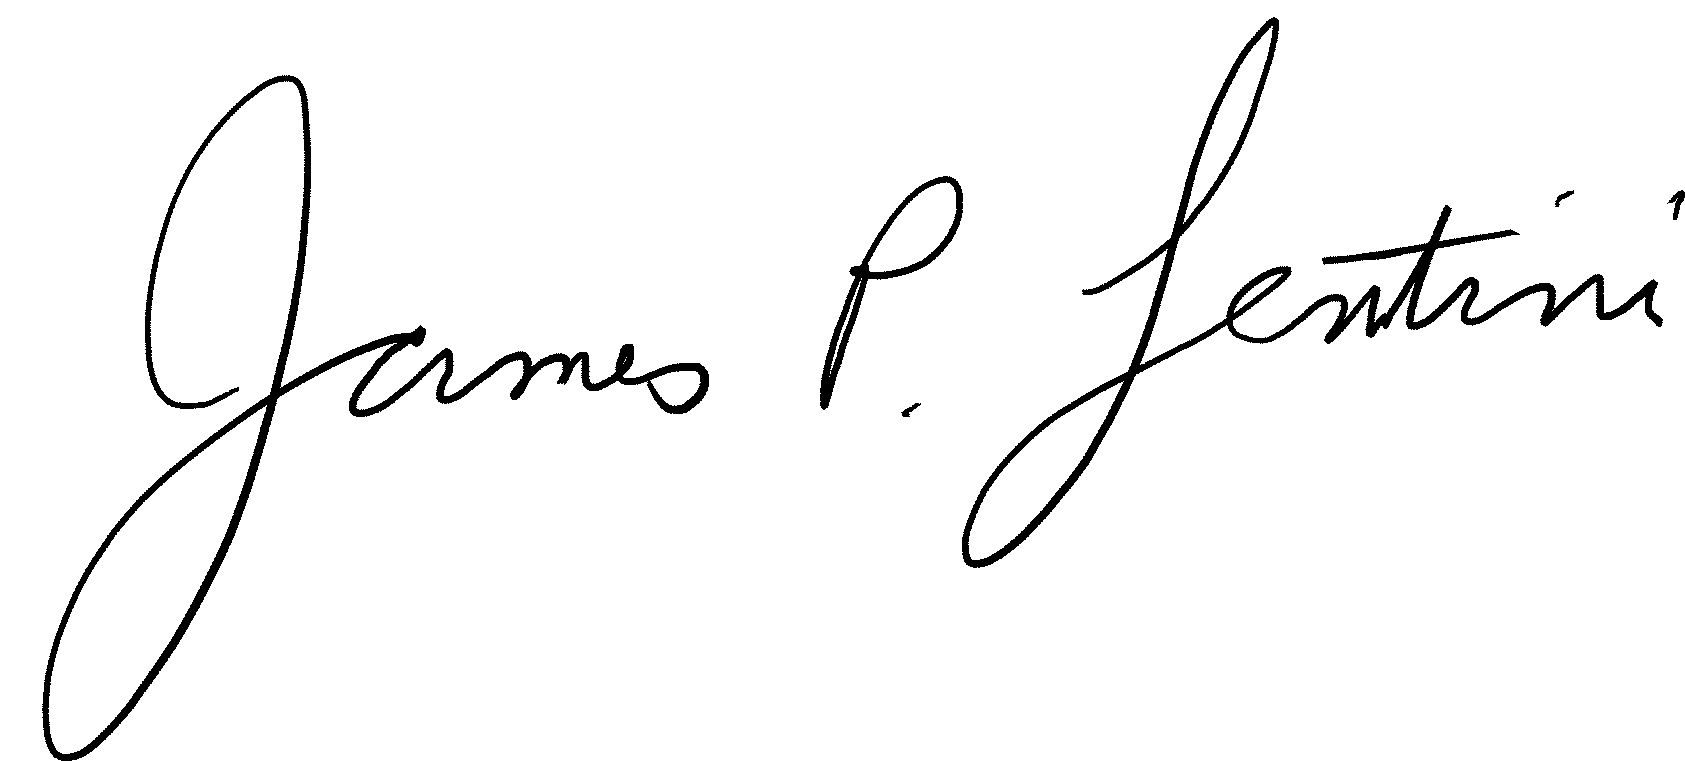 james-lentini-jpeg-signature.jpg